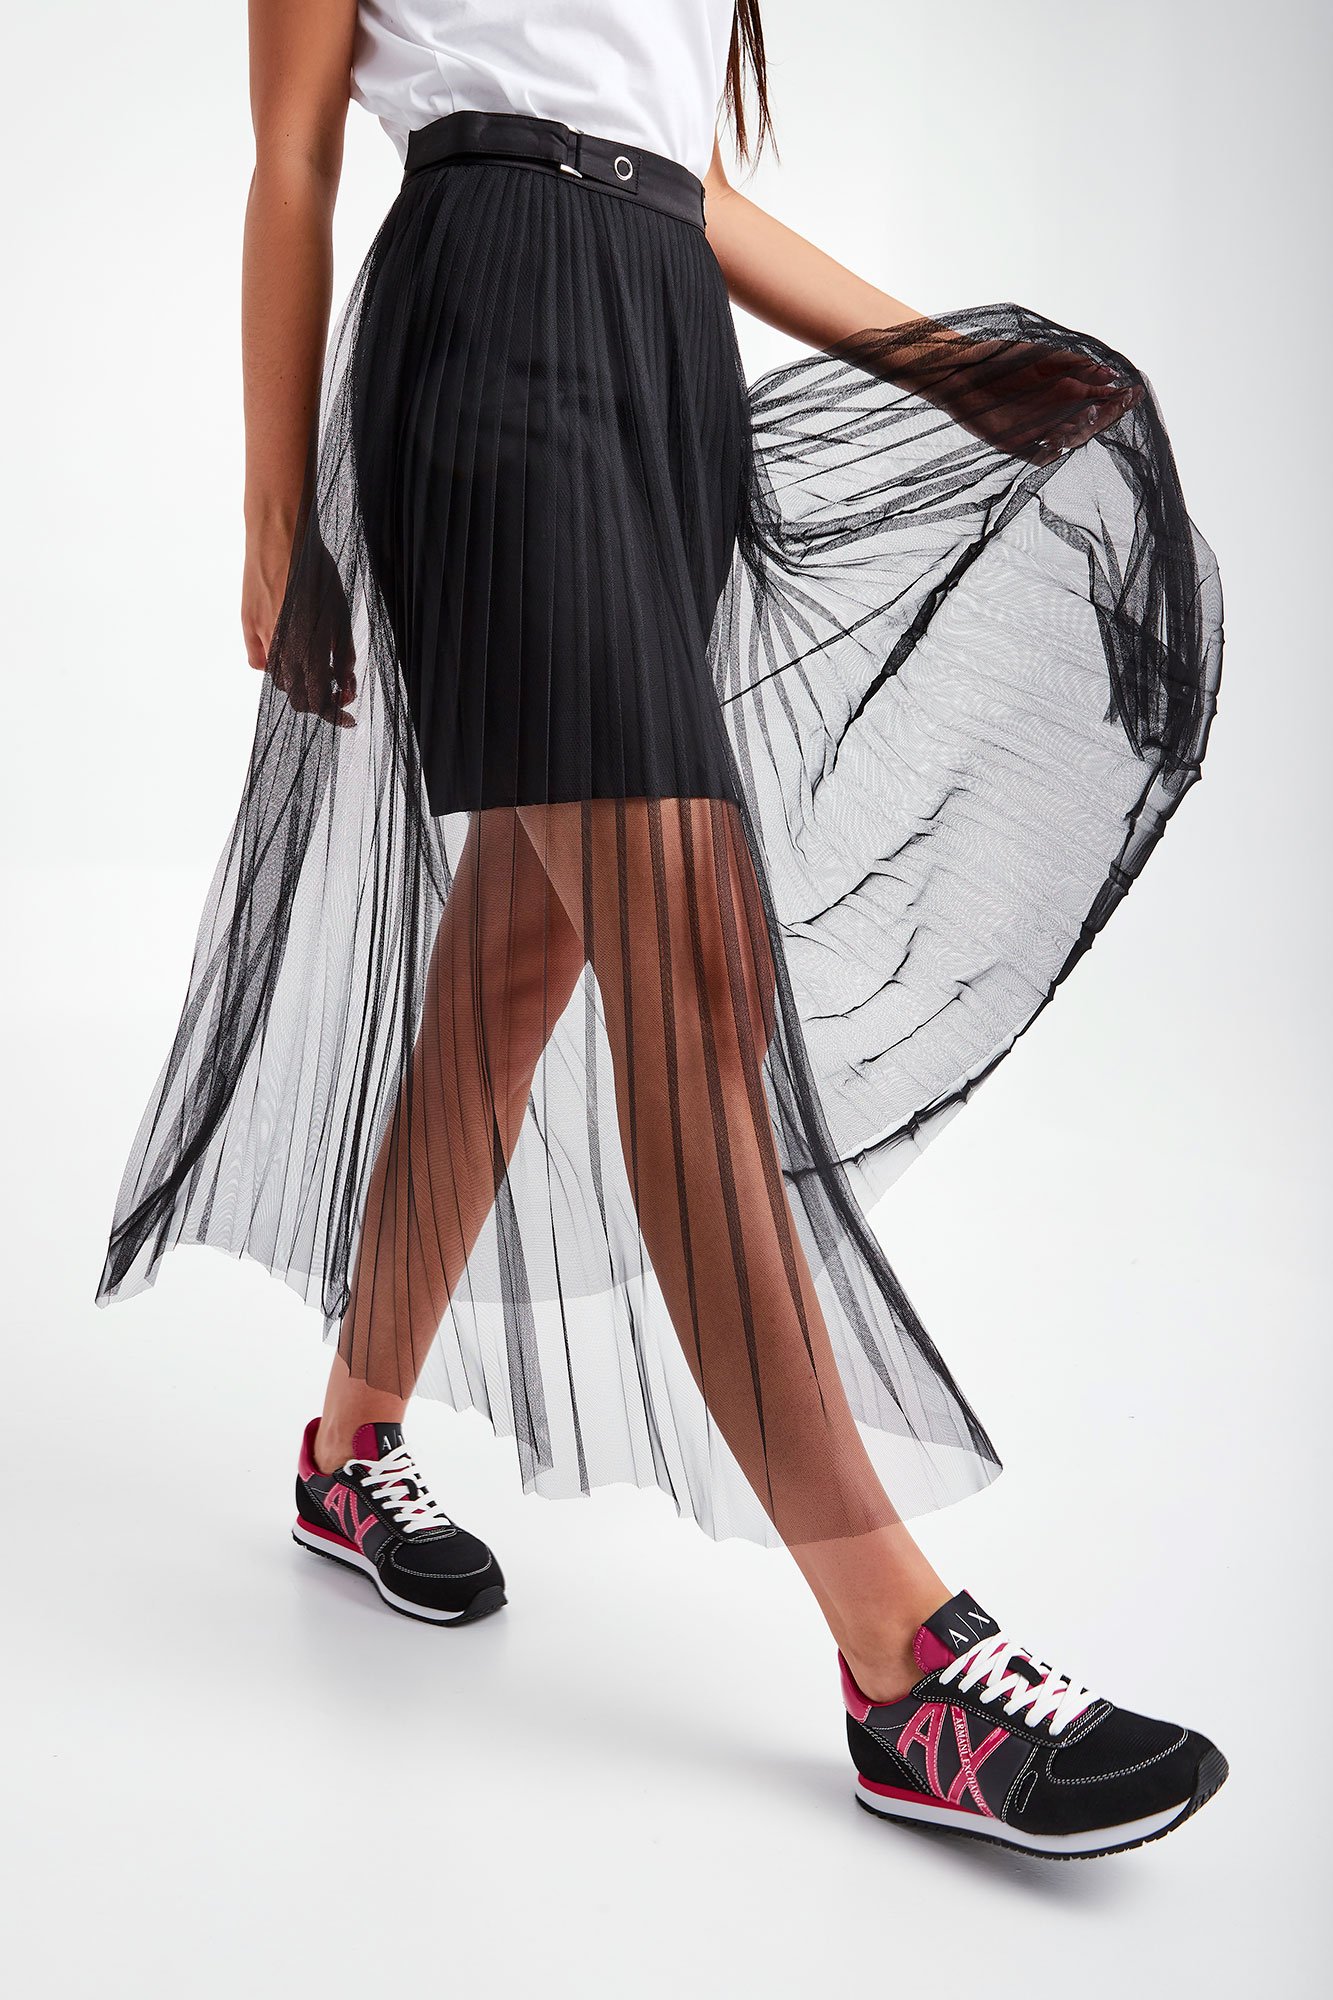 Moda Spódnice Plisowane spódniczki Armani Exchange Plisowana sp\u00f3dnica czarny W stylu casual 